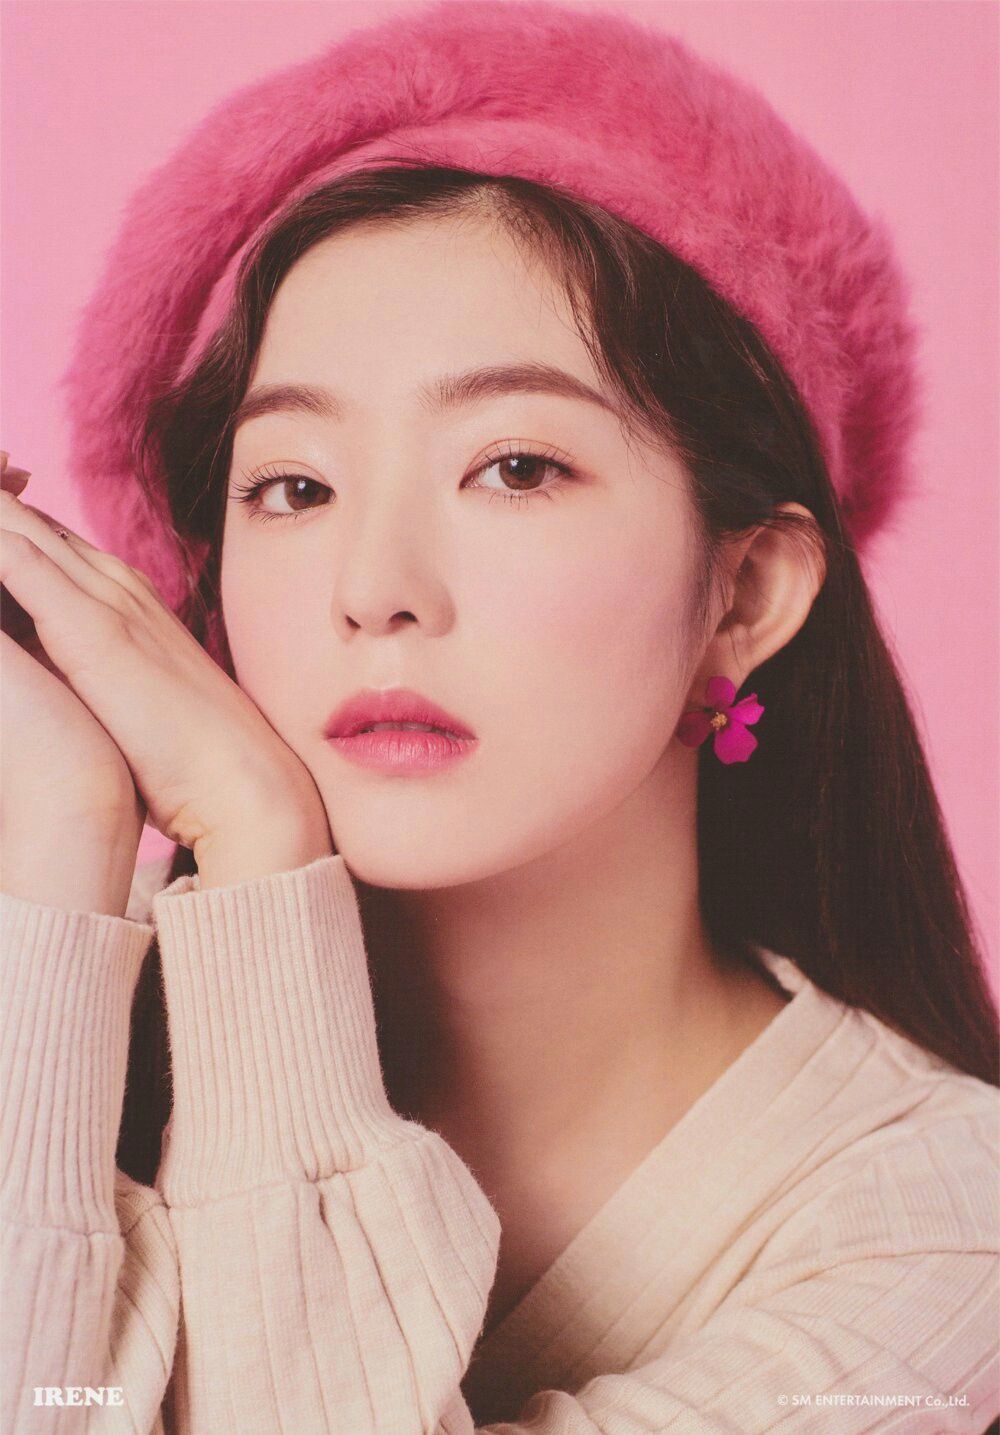  
Irene mang vẻ đẹp thánh thiện, trong sáng. (Ảnh: SM)